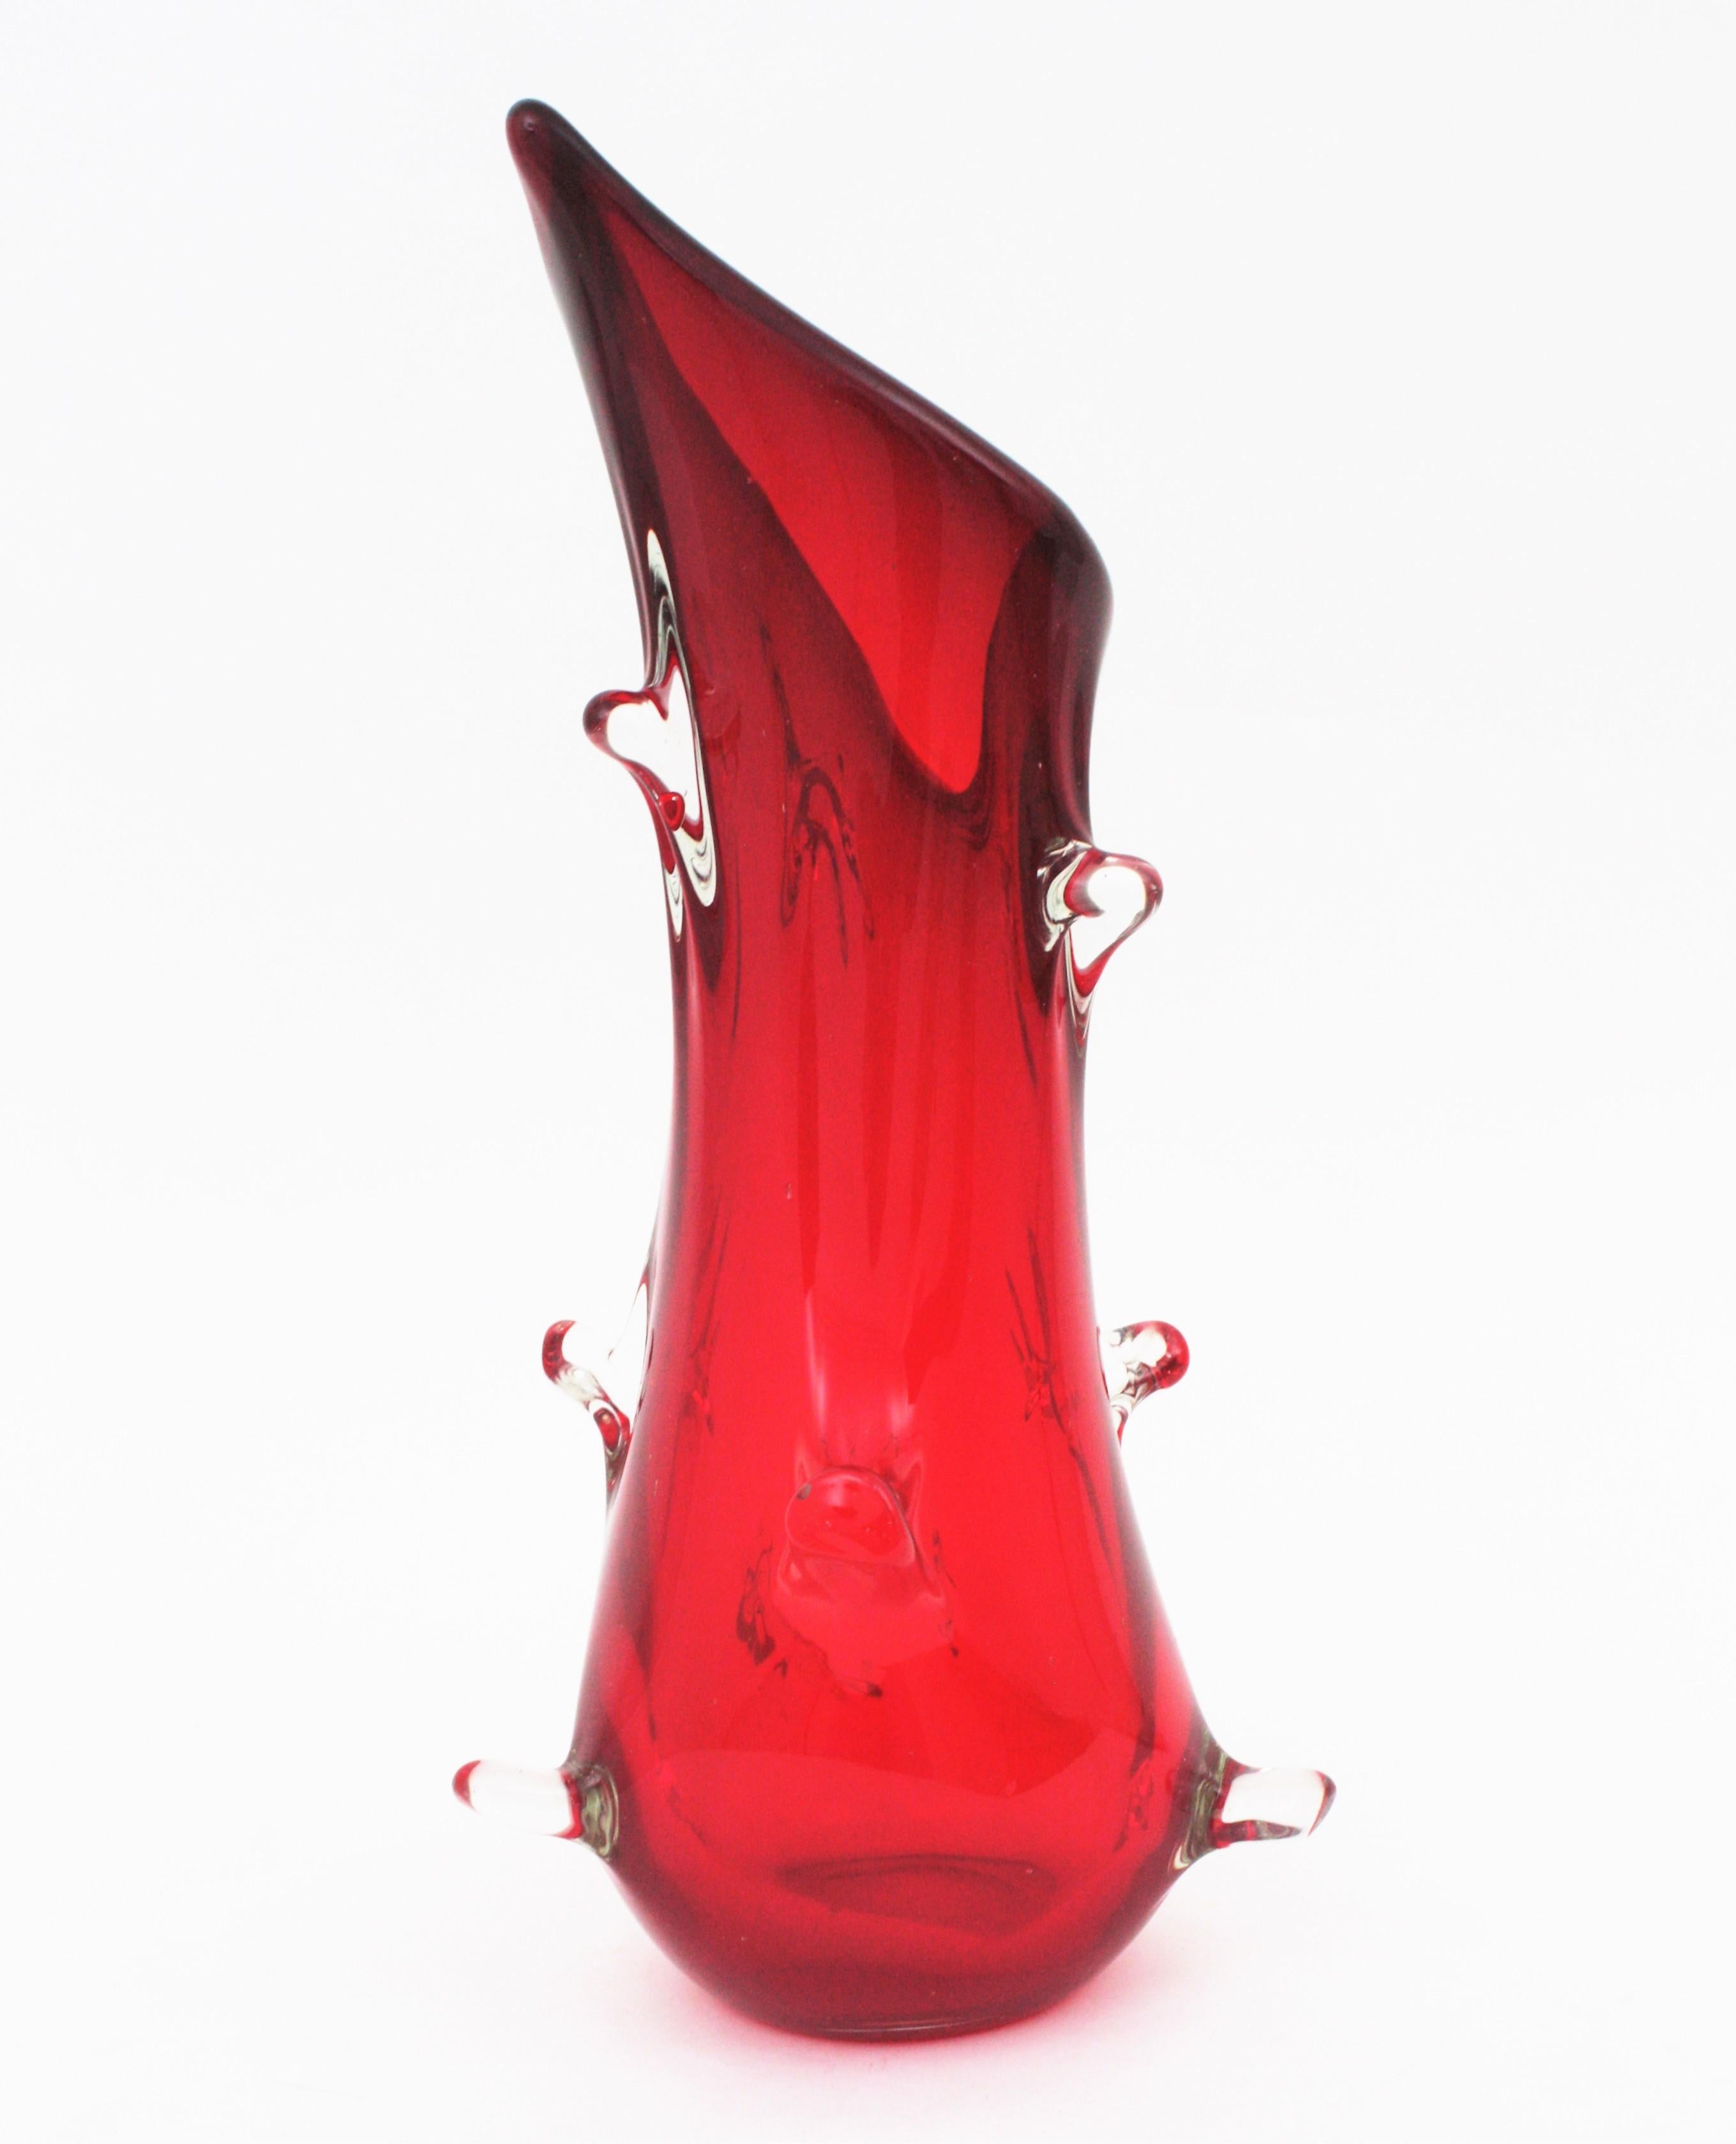 Italian Archimede Seguso Murano Sommerso Red Iridiscent Art Glass Vase, 1960s For Sale